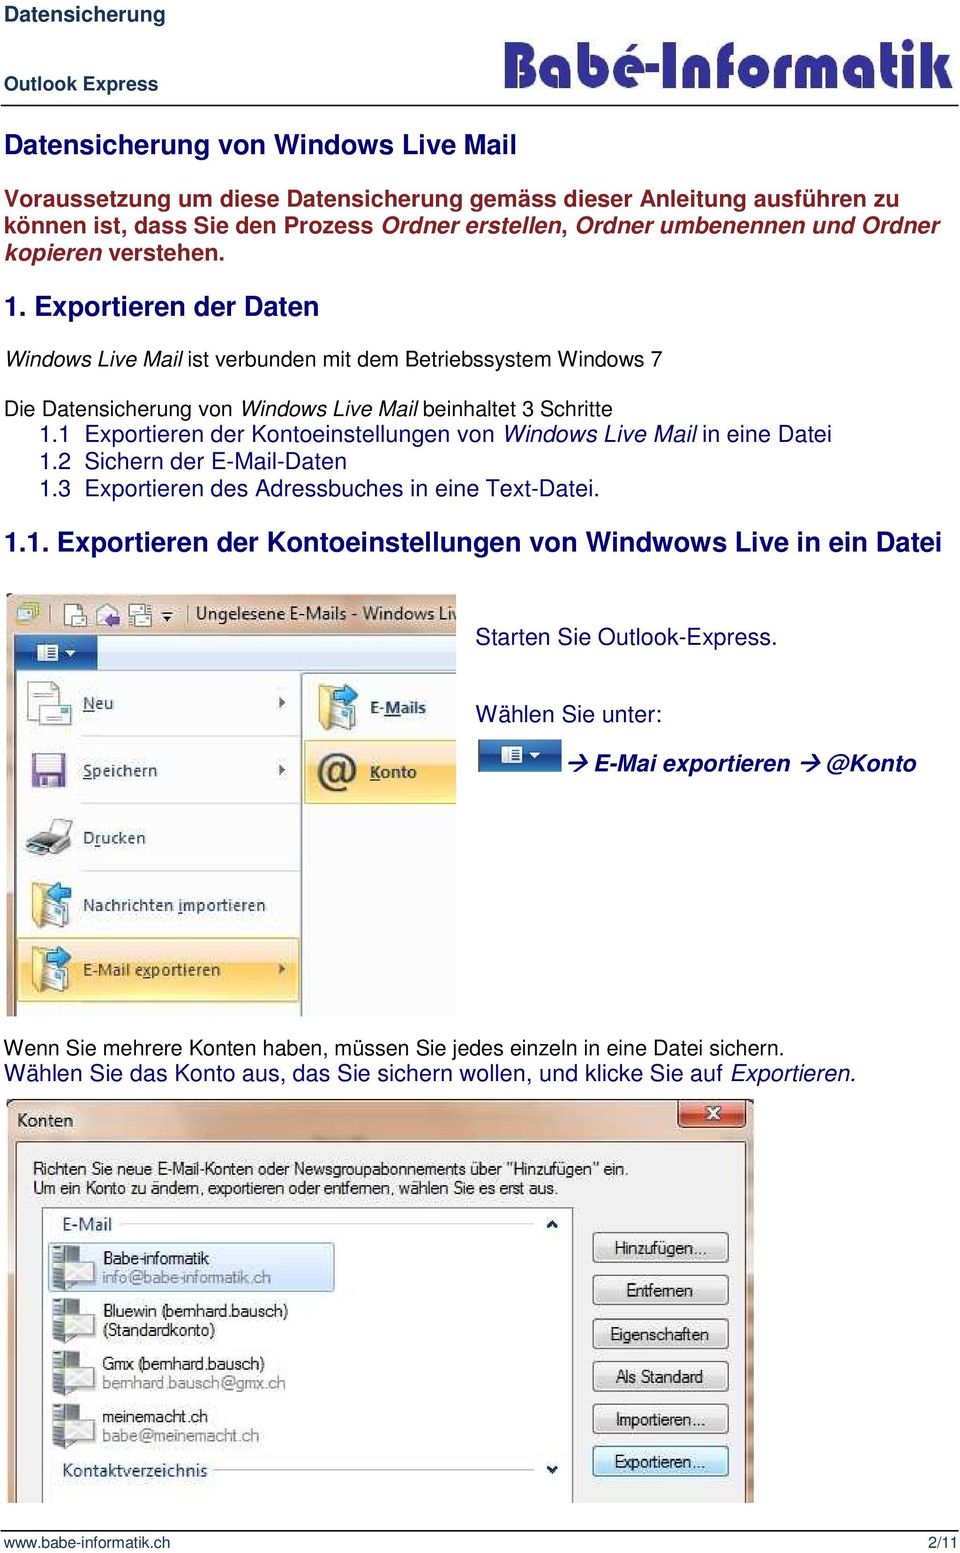 1 Exportieren der Kontoeinstellungen von Windows Live Mail in eine Datei 1.2 Sichern der E-Mail-Daten 1.3 Exportieren des Adressbuches in eine Text-Datei. 1.1. Exportieren der Kontoeinstellungen von Windwows Live in ein Datei Starten Sie Outlook-Express.